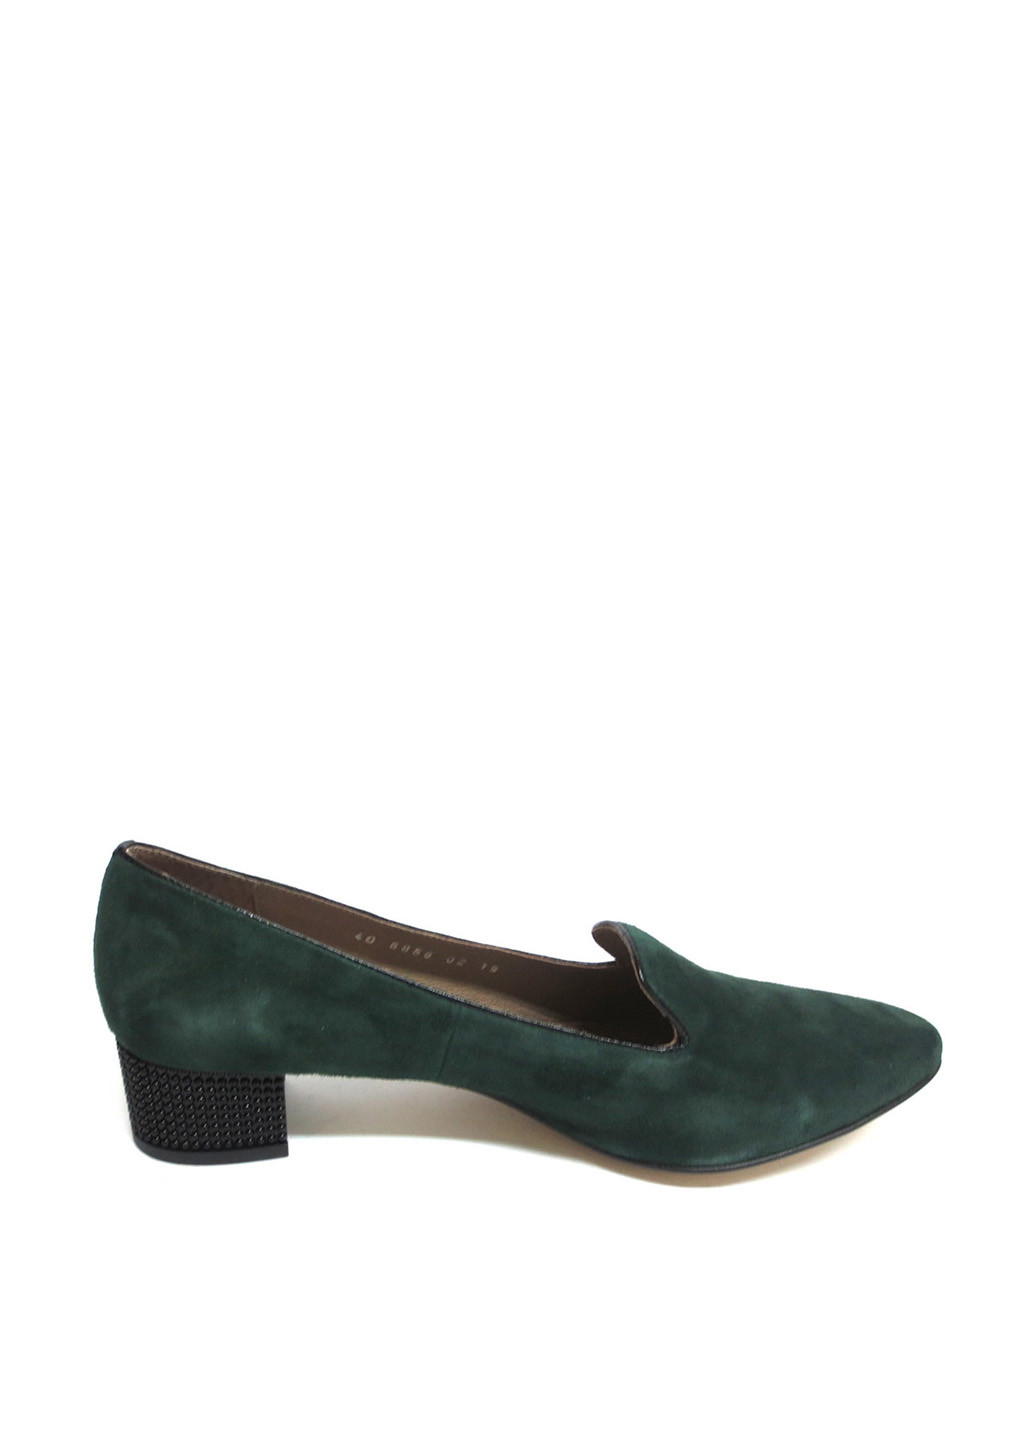 Туфлі Stepter туфлі-човники однотонні темно-зелені кежуали